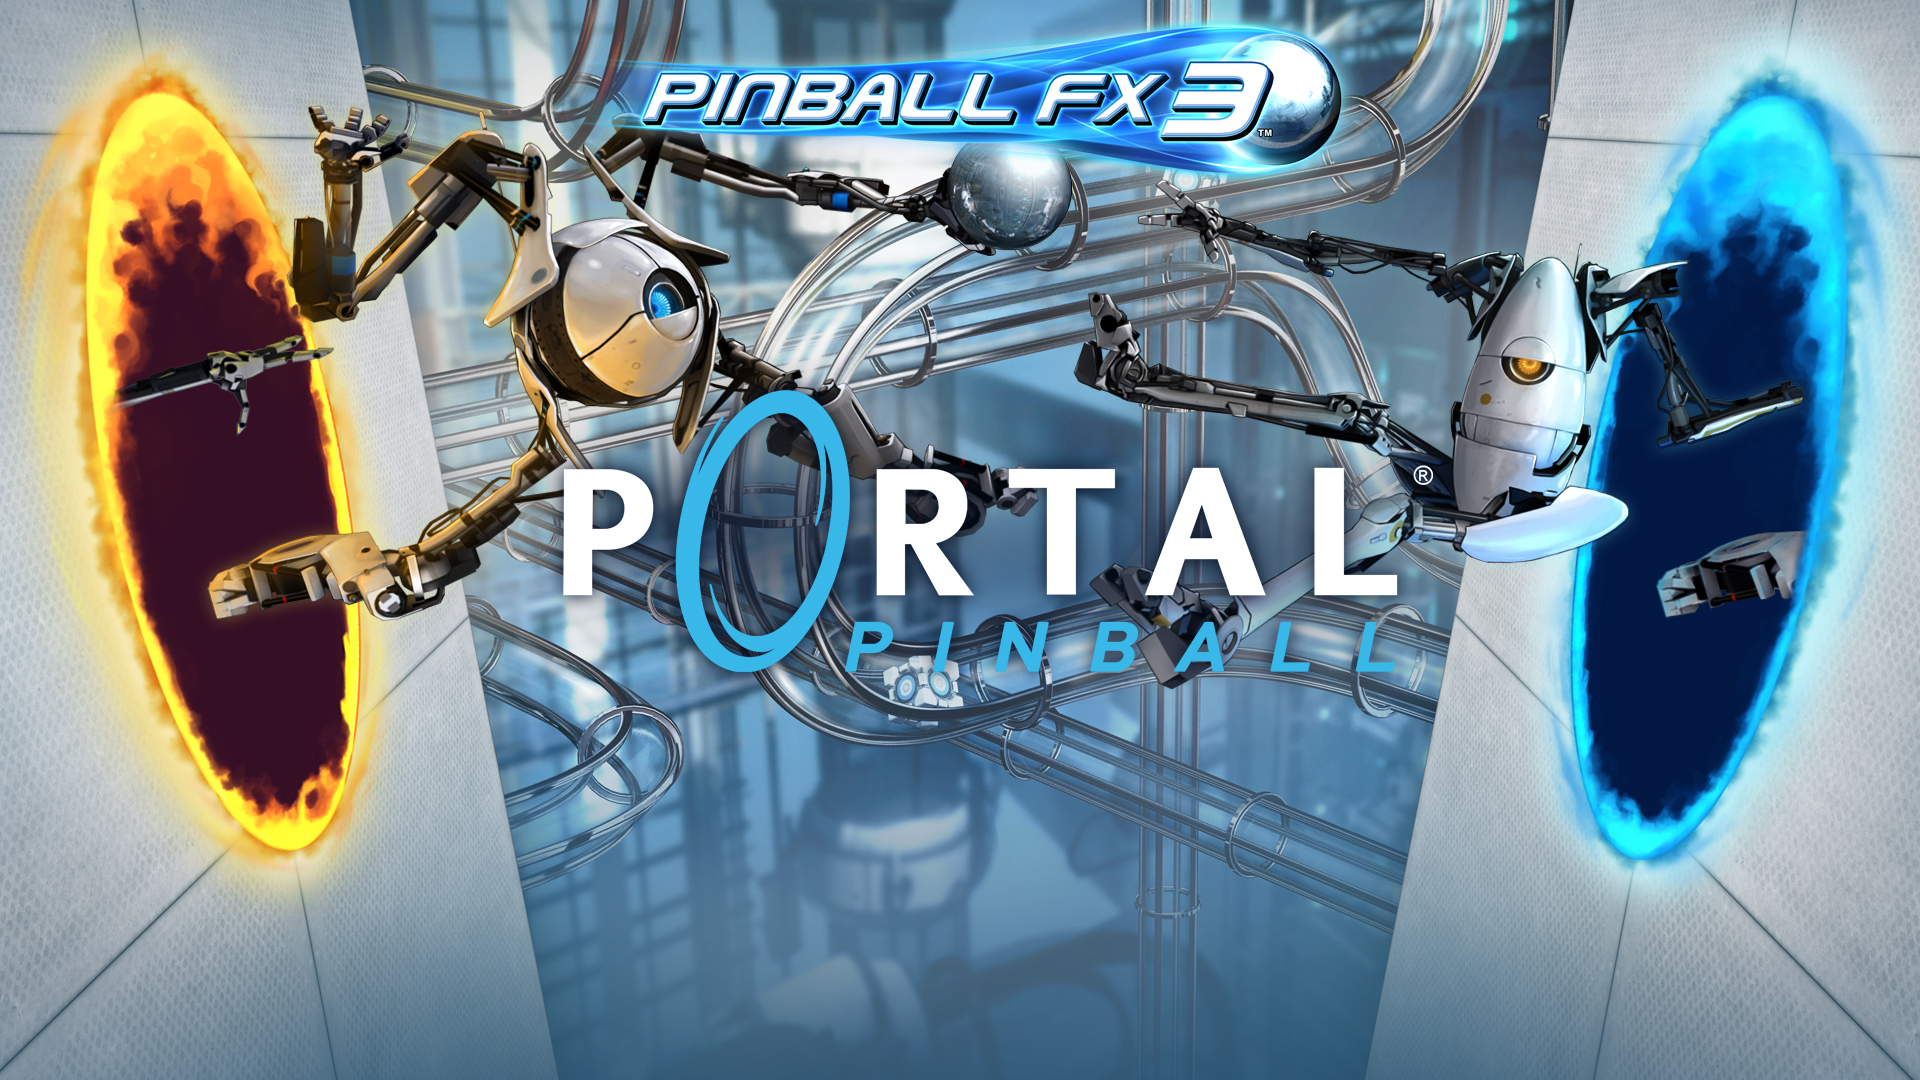 pinball fx3 backglass video download